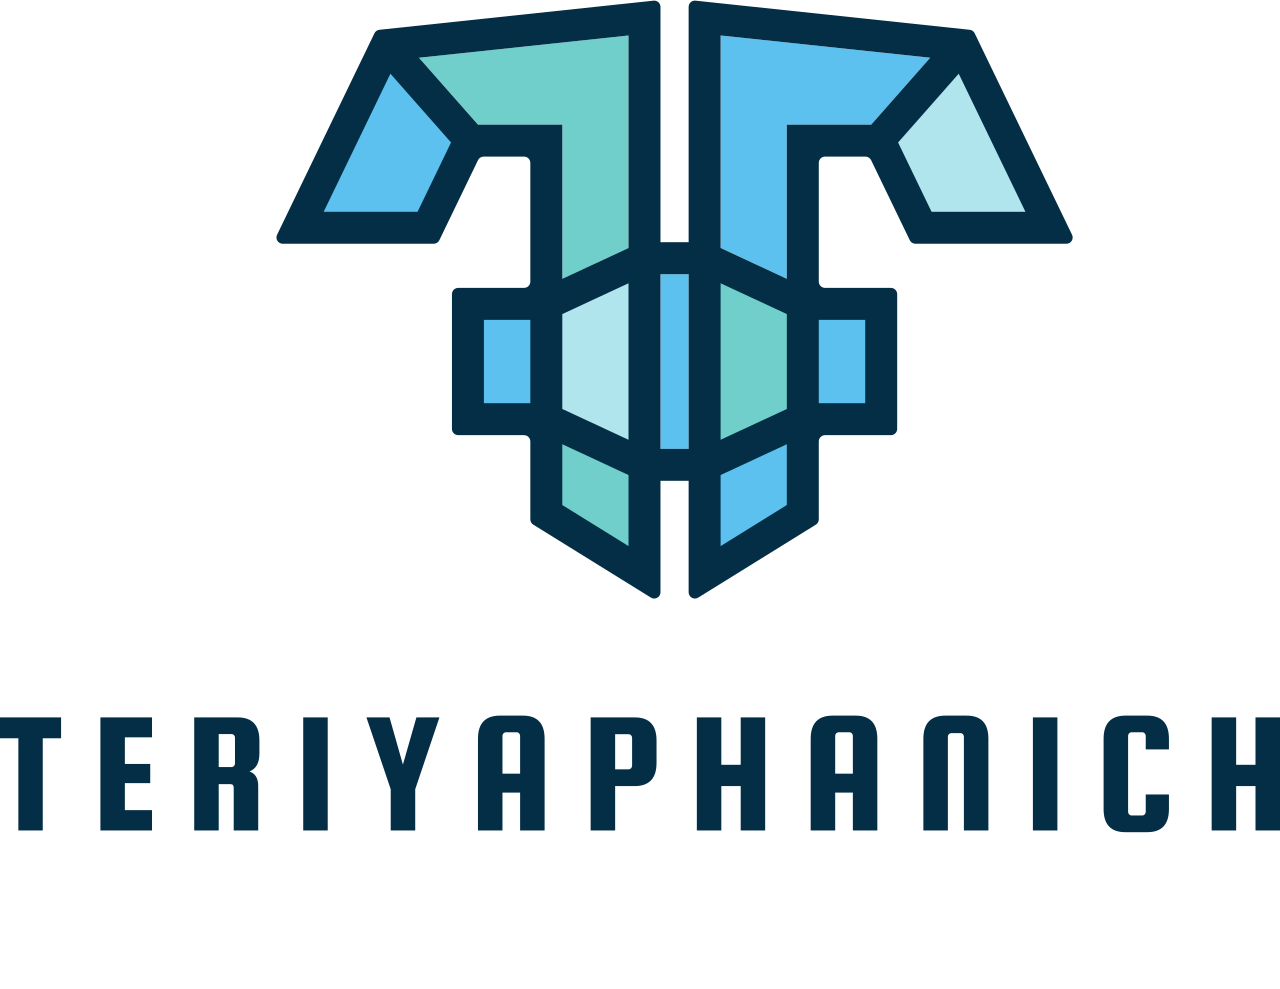 TERIYAPHANICH 's logo